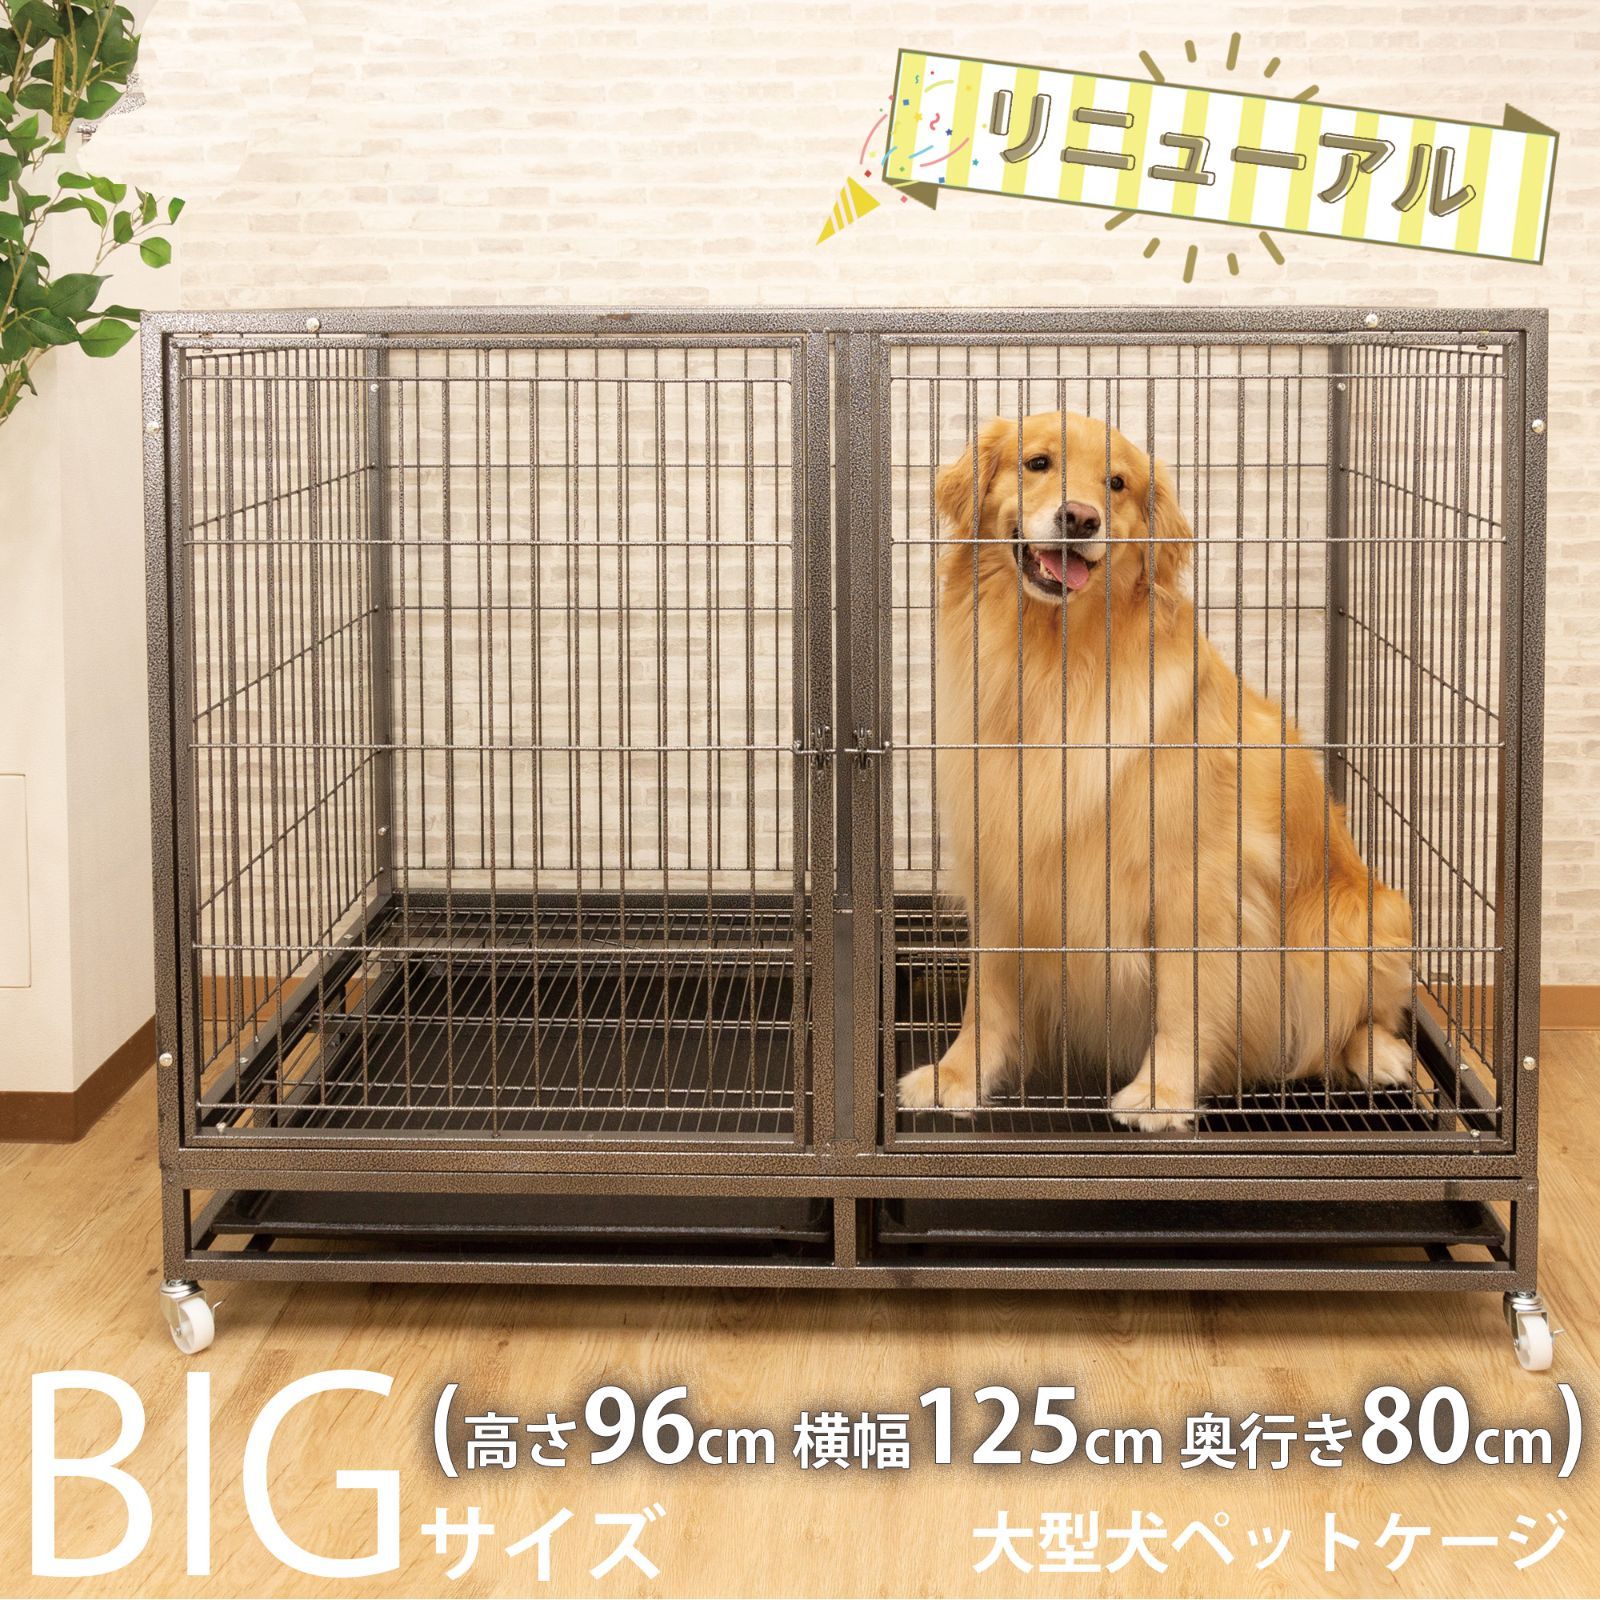 【新品】大型犬ペットケージ 頑丈犬用ゲージ キャスター屋根